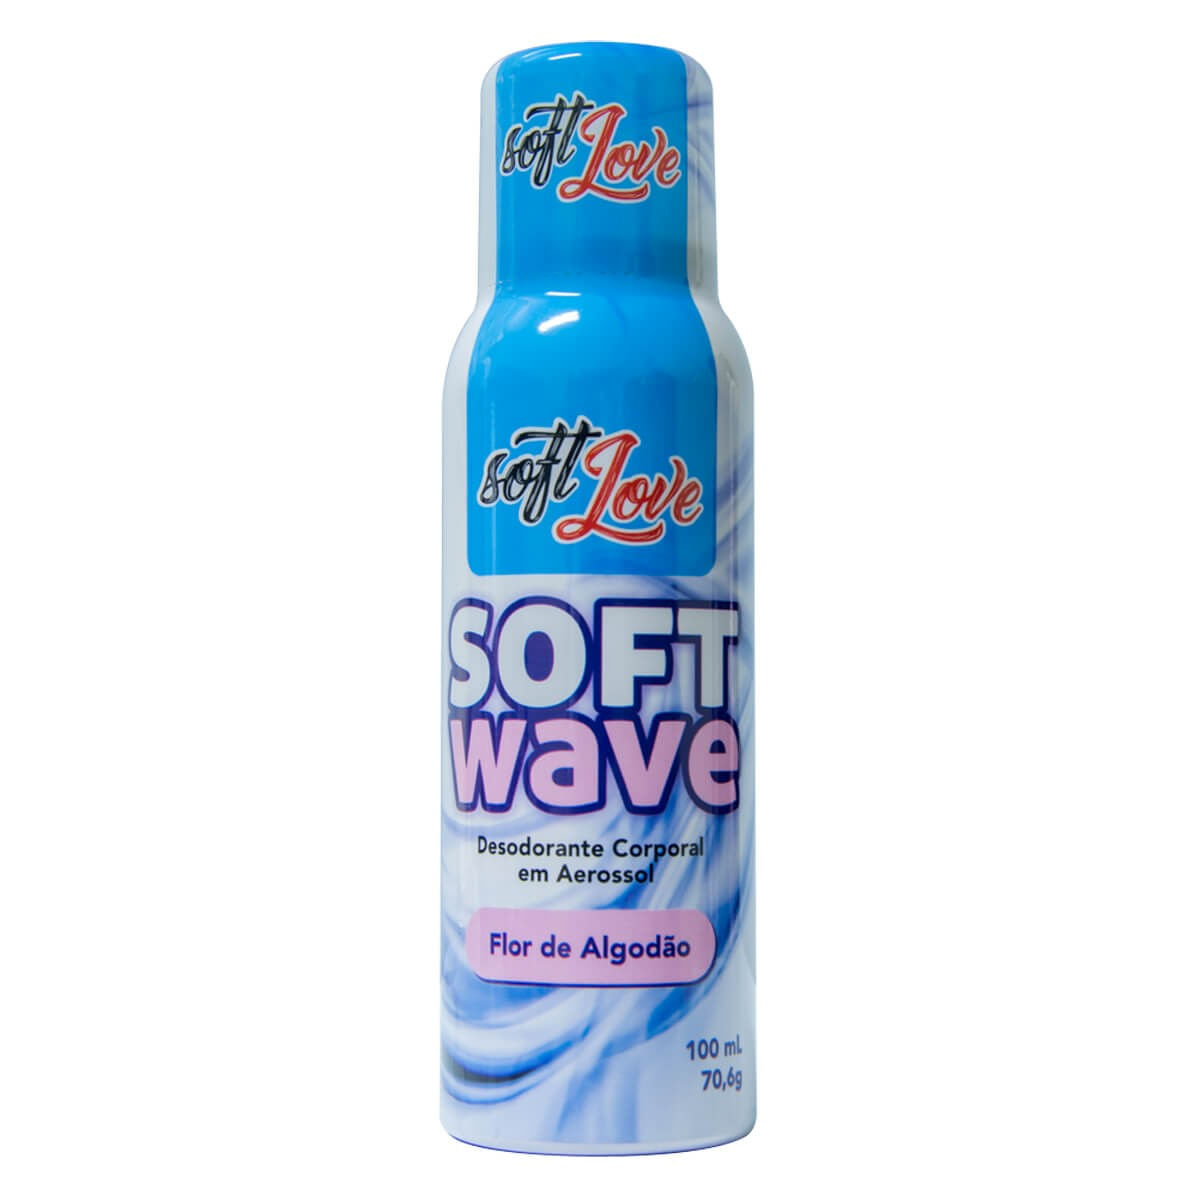 Soft Wave Desodorante Corporal em Aerossol Flor de Algodão 100ml Soft Love